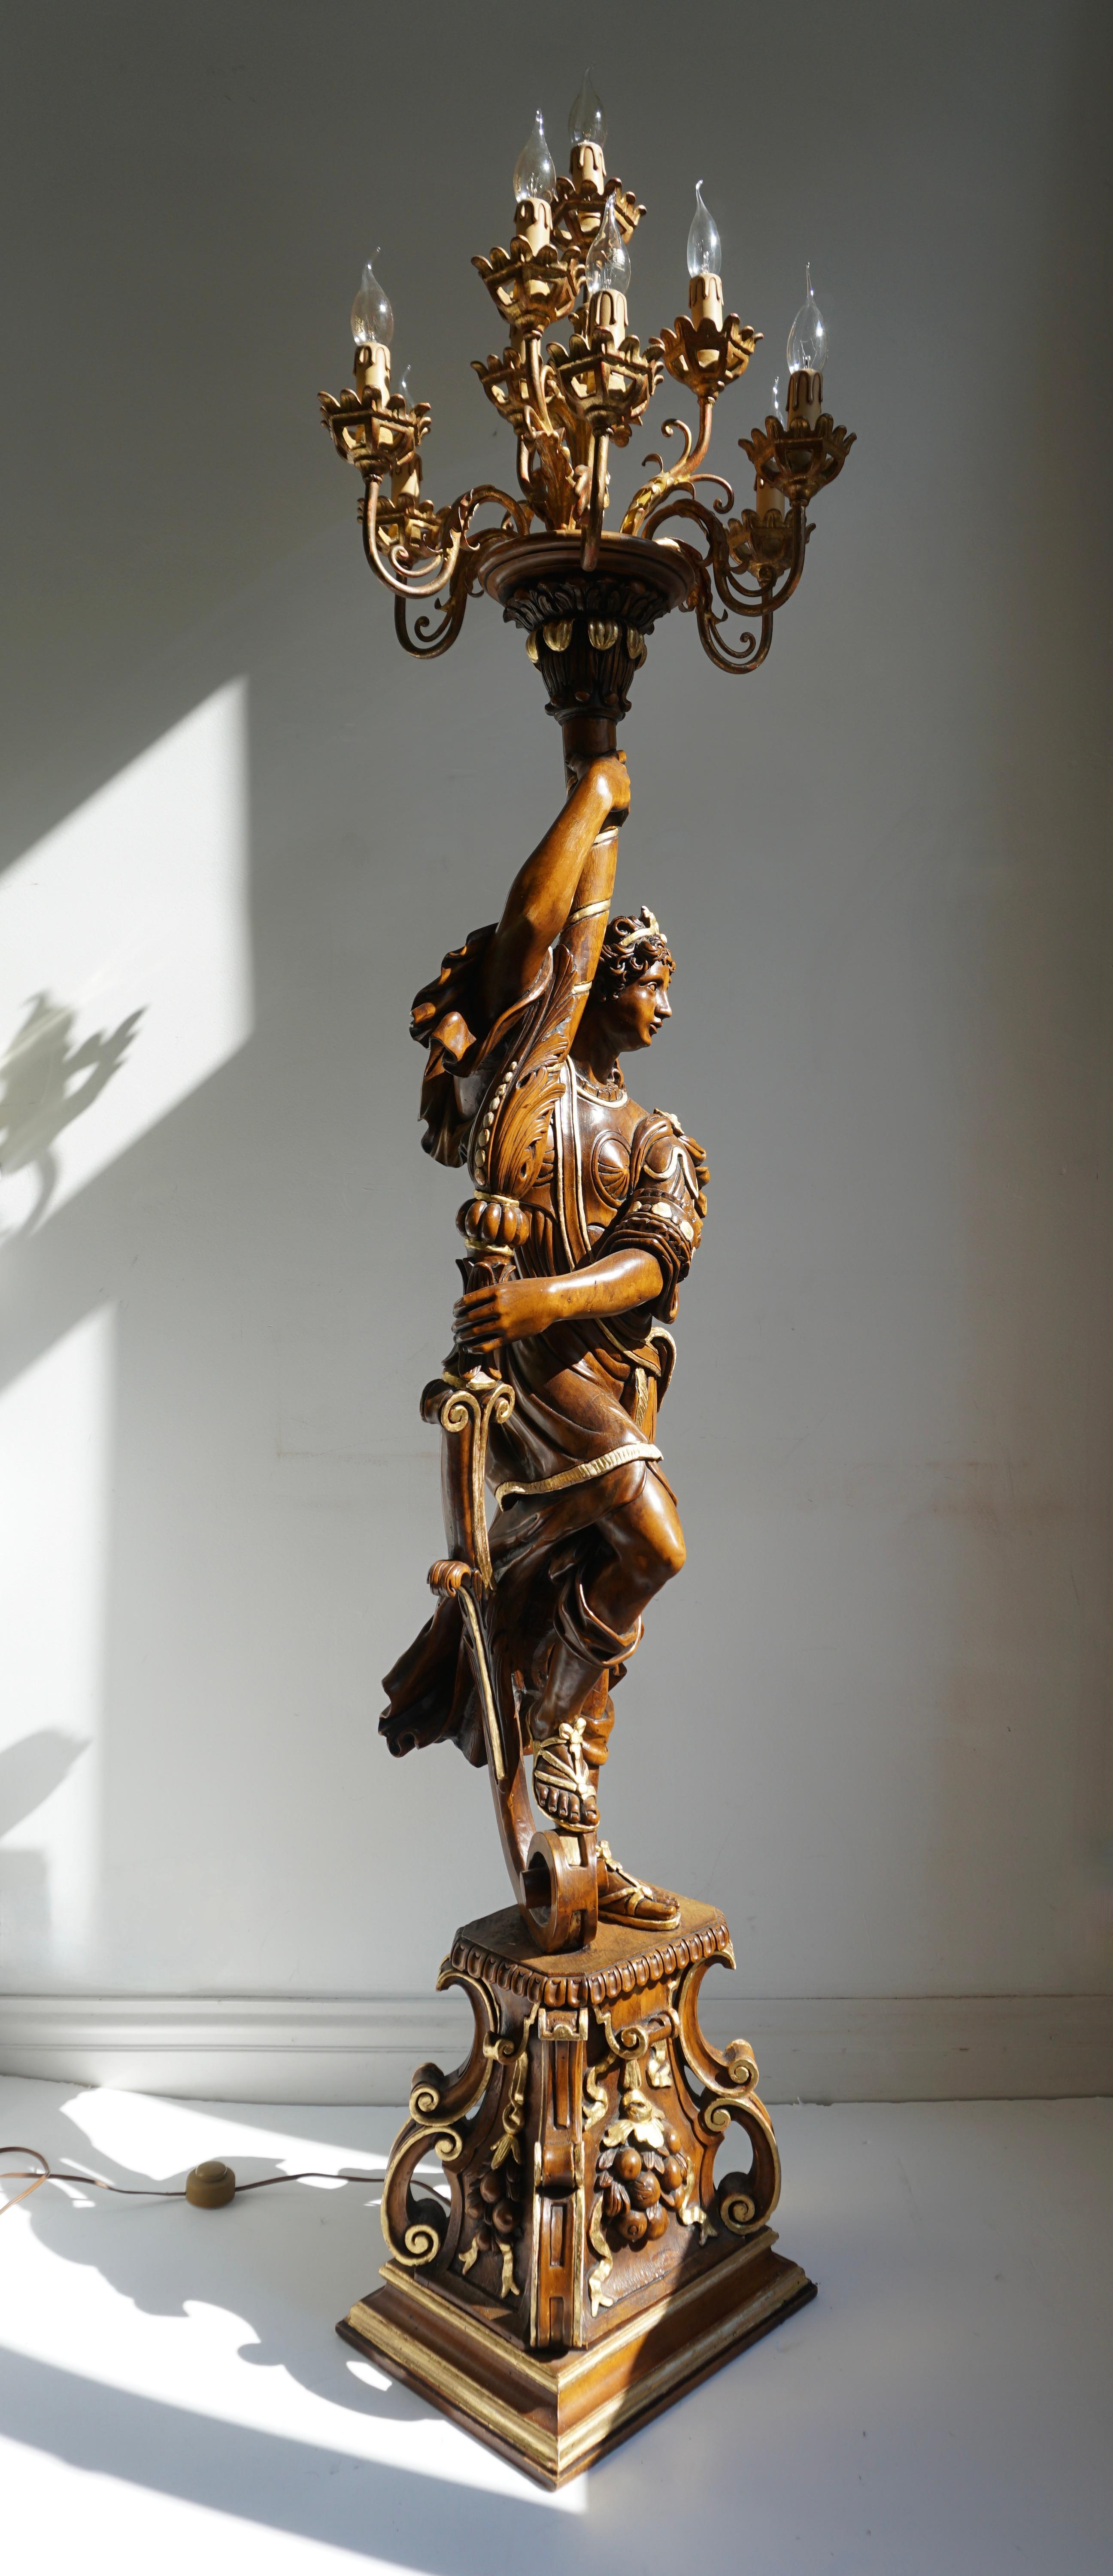 Il s'agit d'un exquis lampadaire décoratif de style vénitien provenant de Florence !  
Cette rare et élégante figure italienne du milieu du siècle en bois sculpté et peint en polychromie tient un candélabre à dix branches. Chaque bras du candélabre